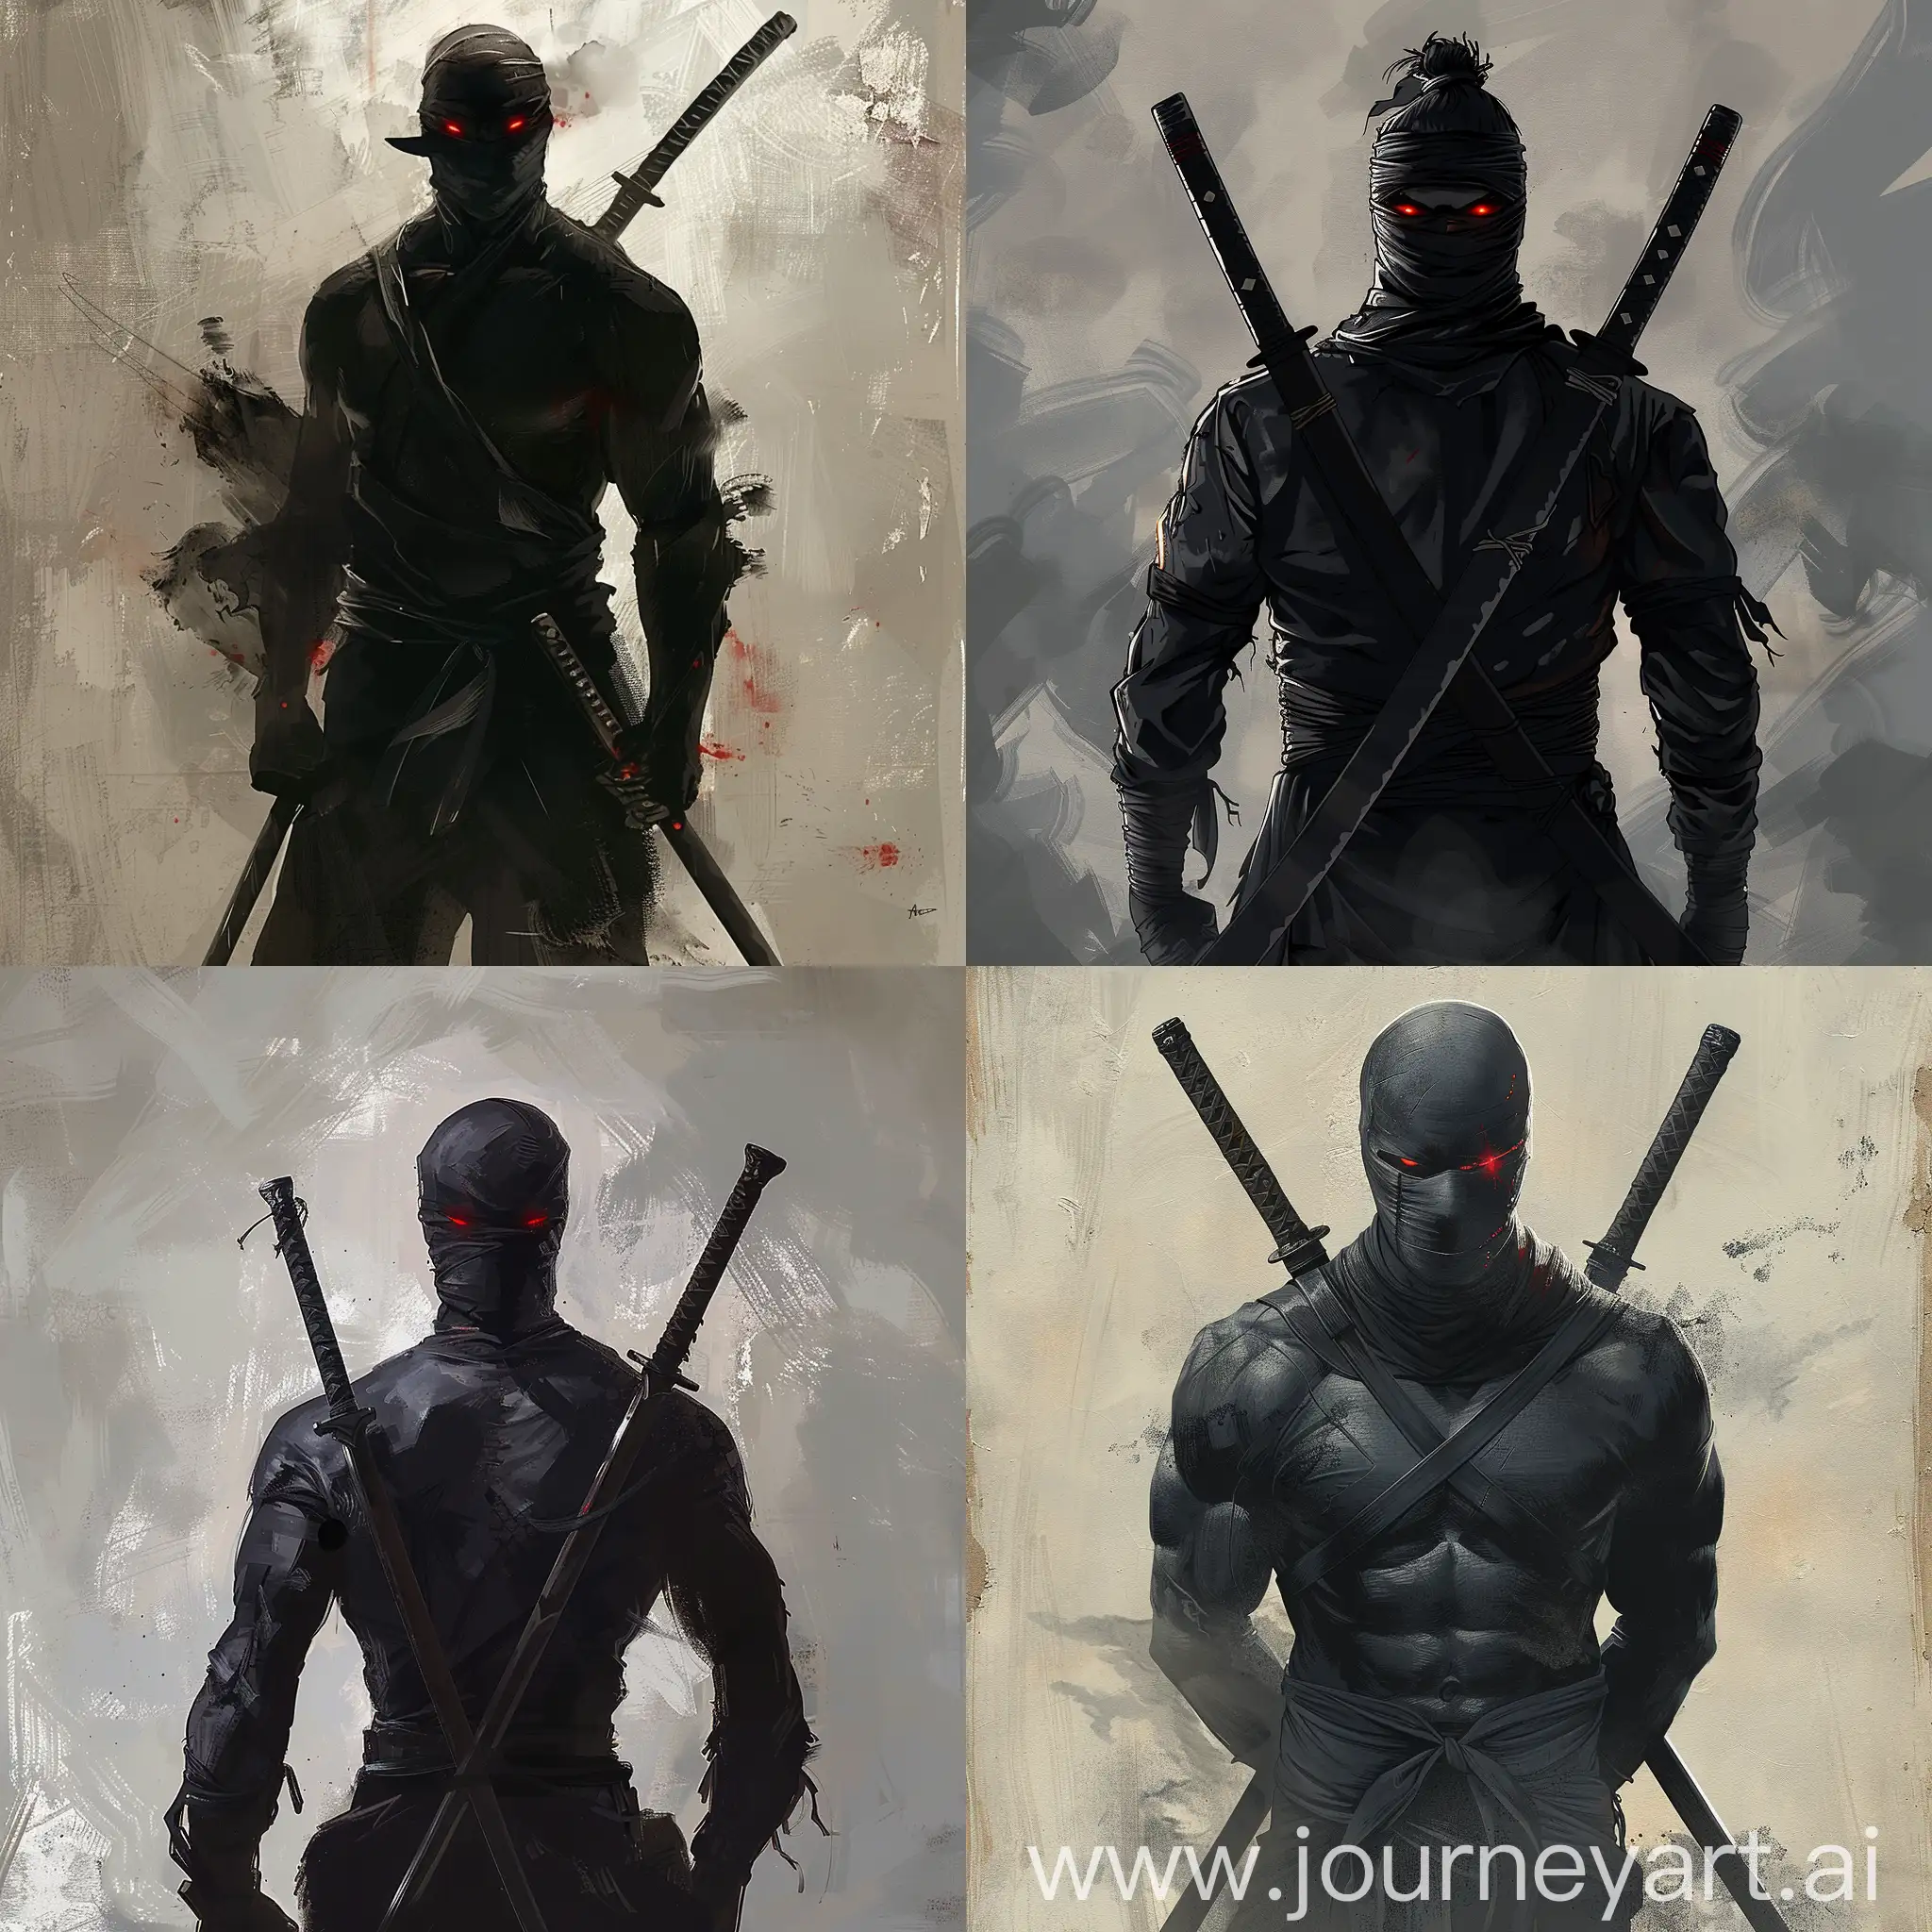 Legendary-Warrior-DualWielding-Swords-in-Black-Attire-with-Fiery-Red-Eyes